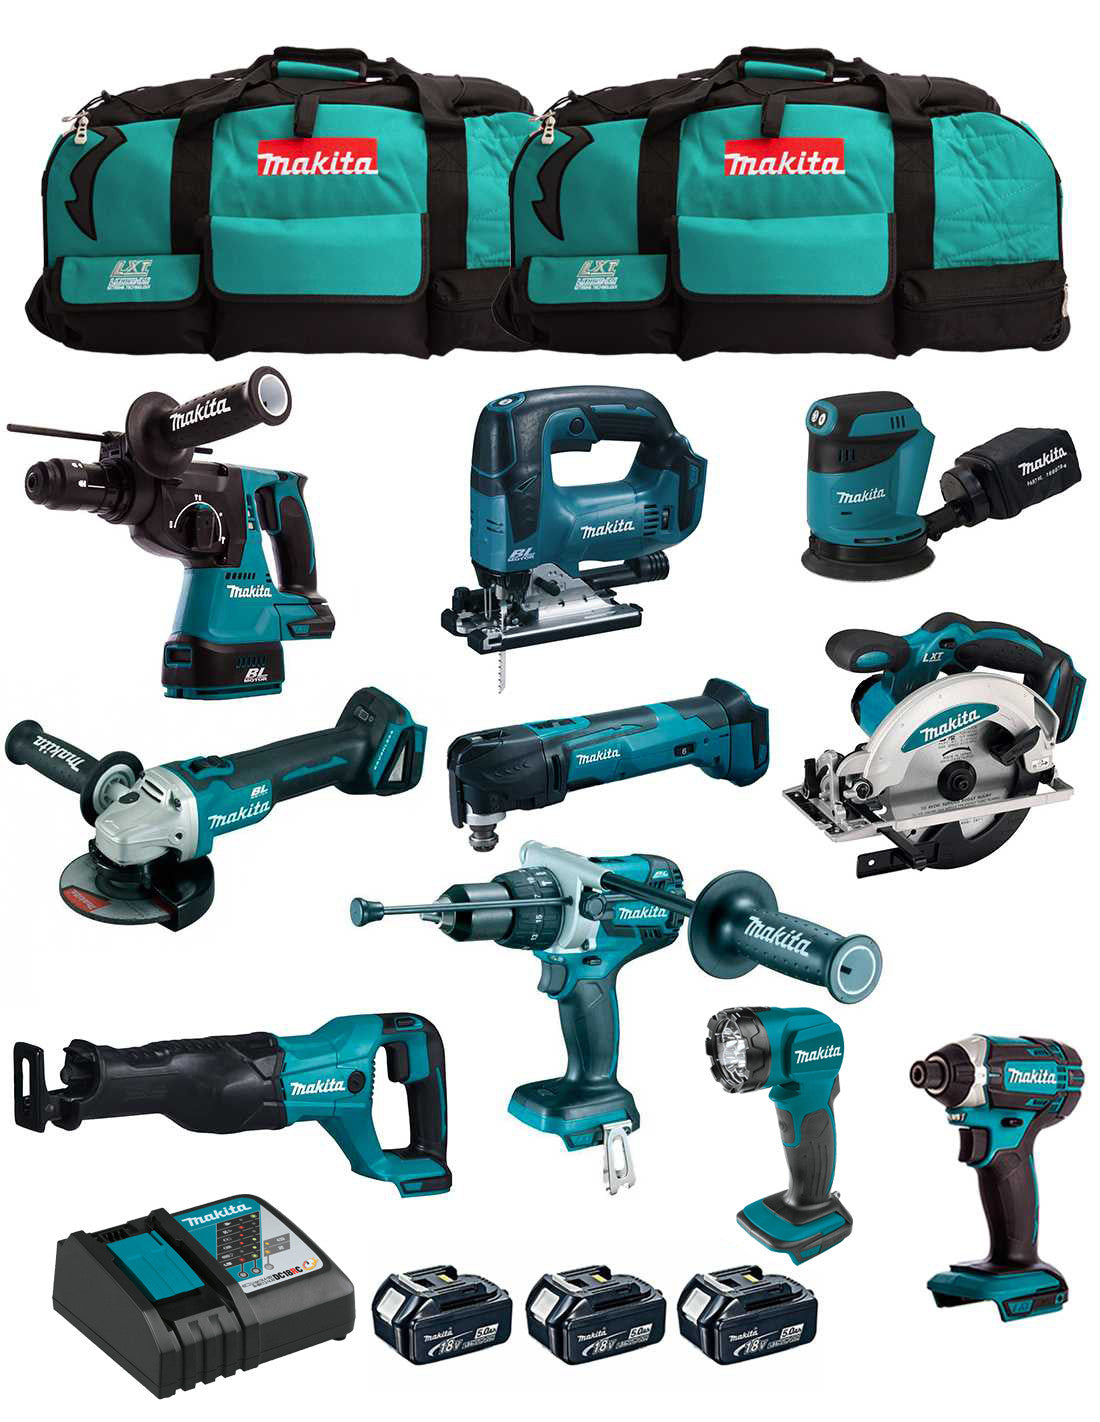 Makita-Set mit 10 Werkzeugen + 3 Schlägern + Ladegerät + 2 Taschen DLX1043BL3